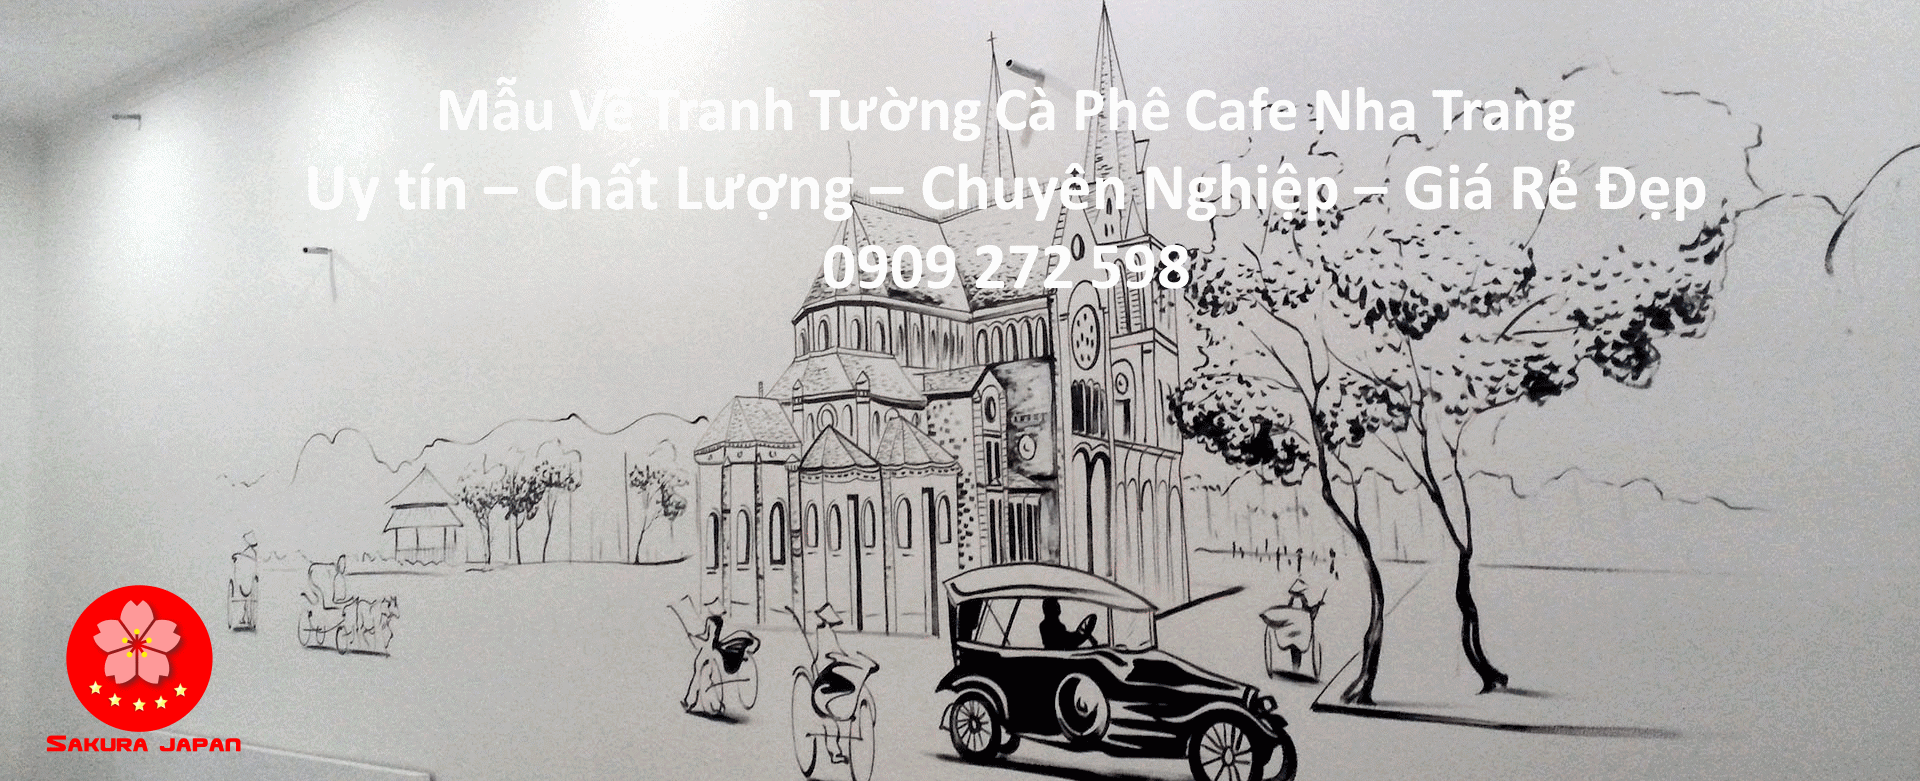 Mẫu Vẽ tranh Tường Cafe Nha Trang 14